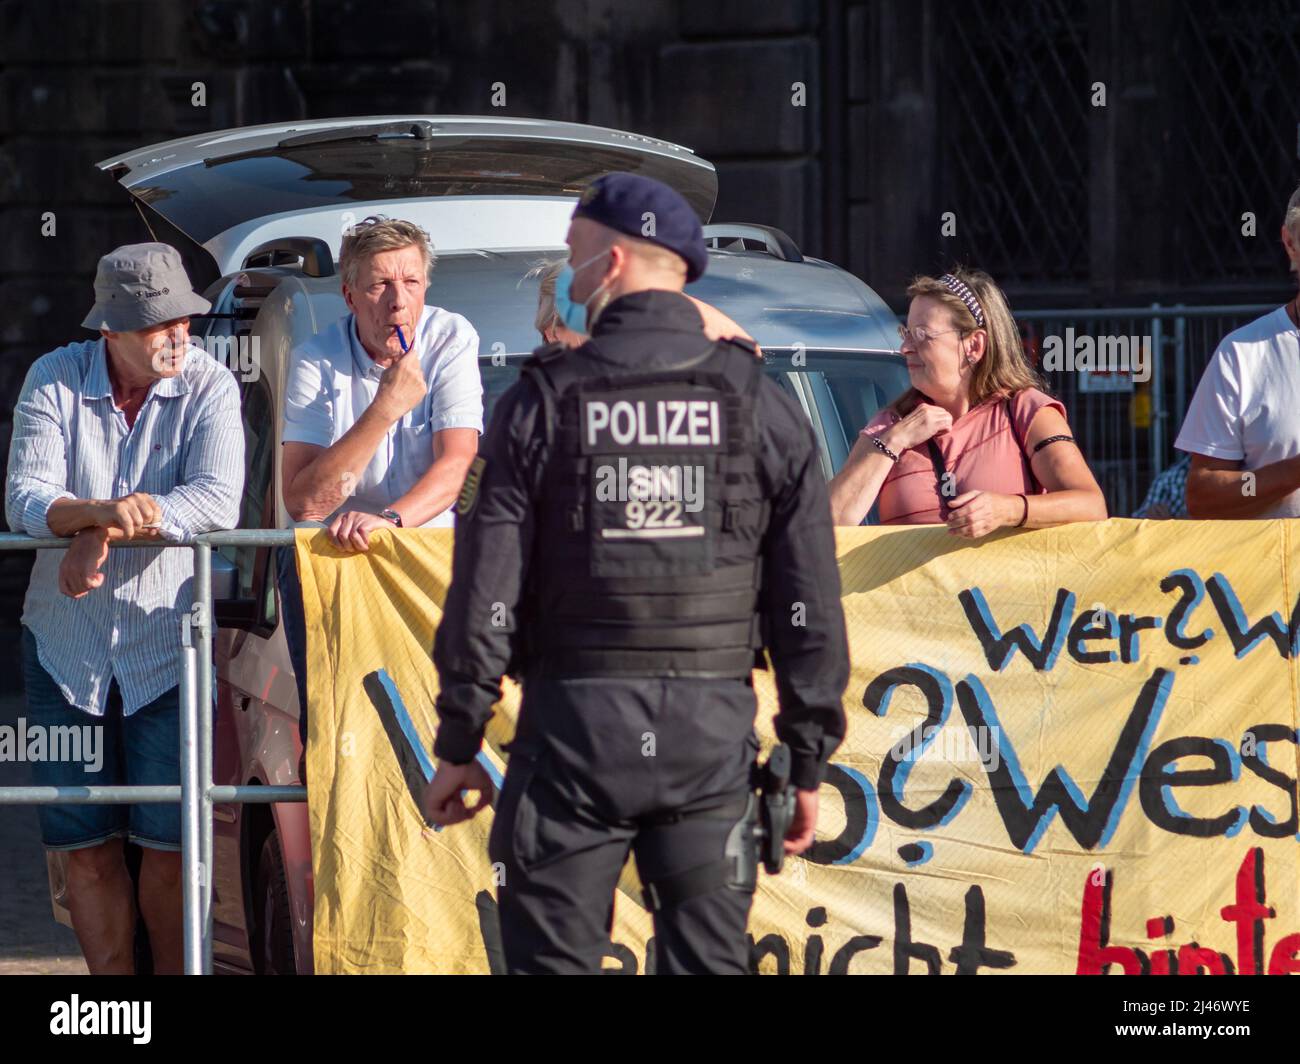 Polizist vor Querdenken-Demonstranten. Demonstration gegen die deutsche Bundeskanzlerin Angela Merkel mit Pfeifen, um viel Lärm zu machen. Stockfoto